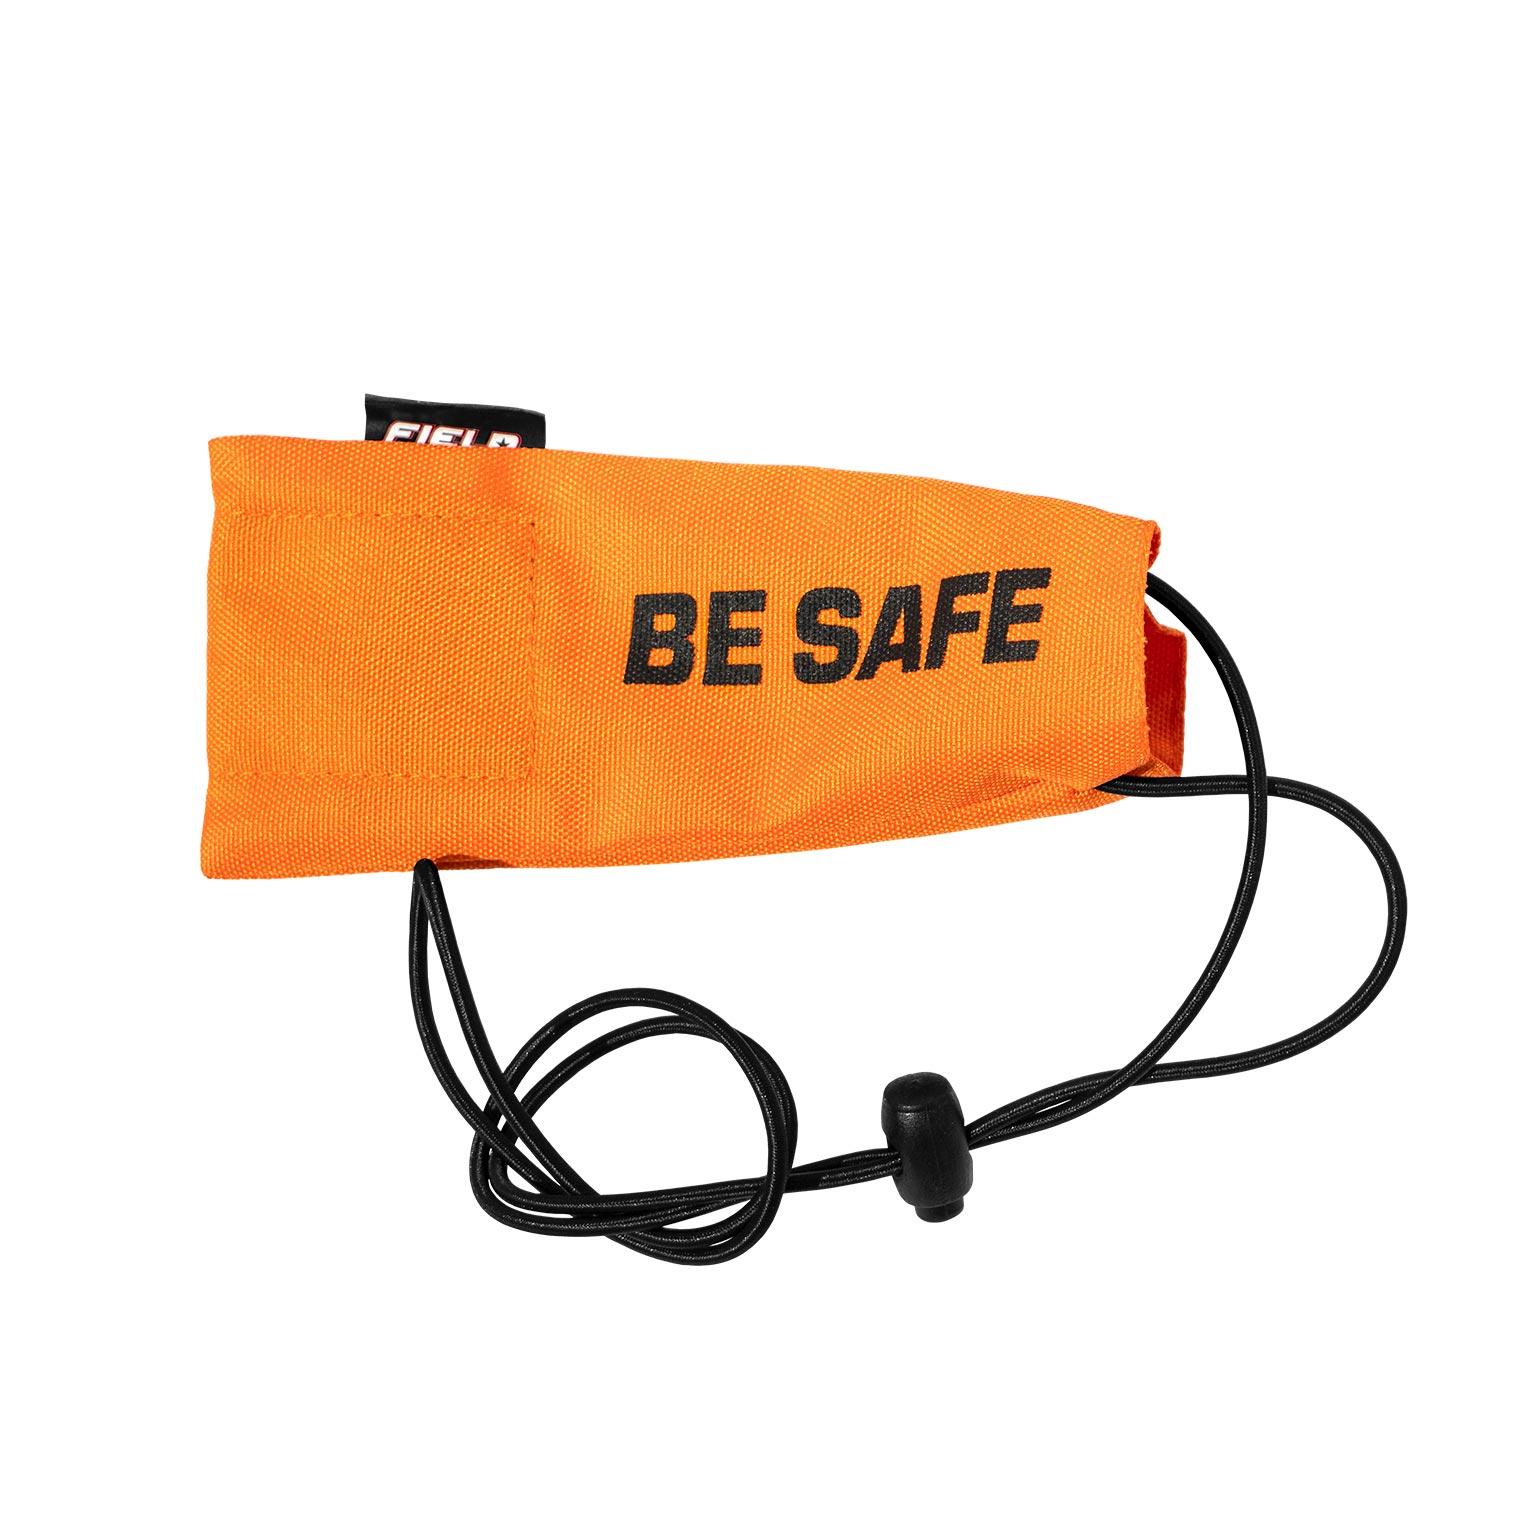 Field Barrel Cover "Be Safe" Orange